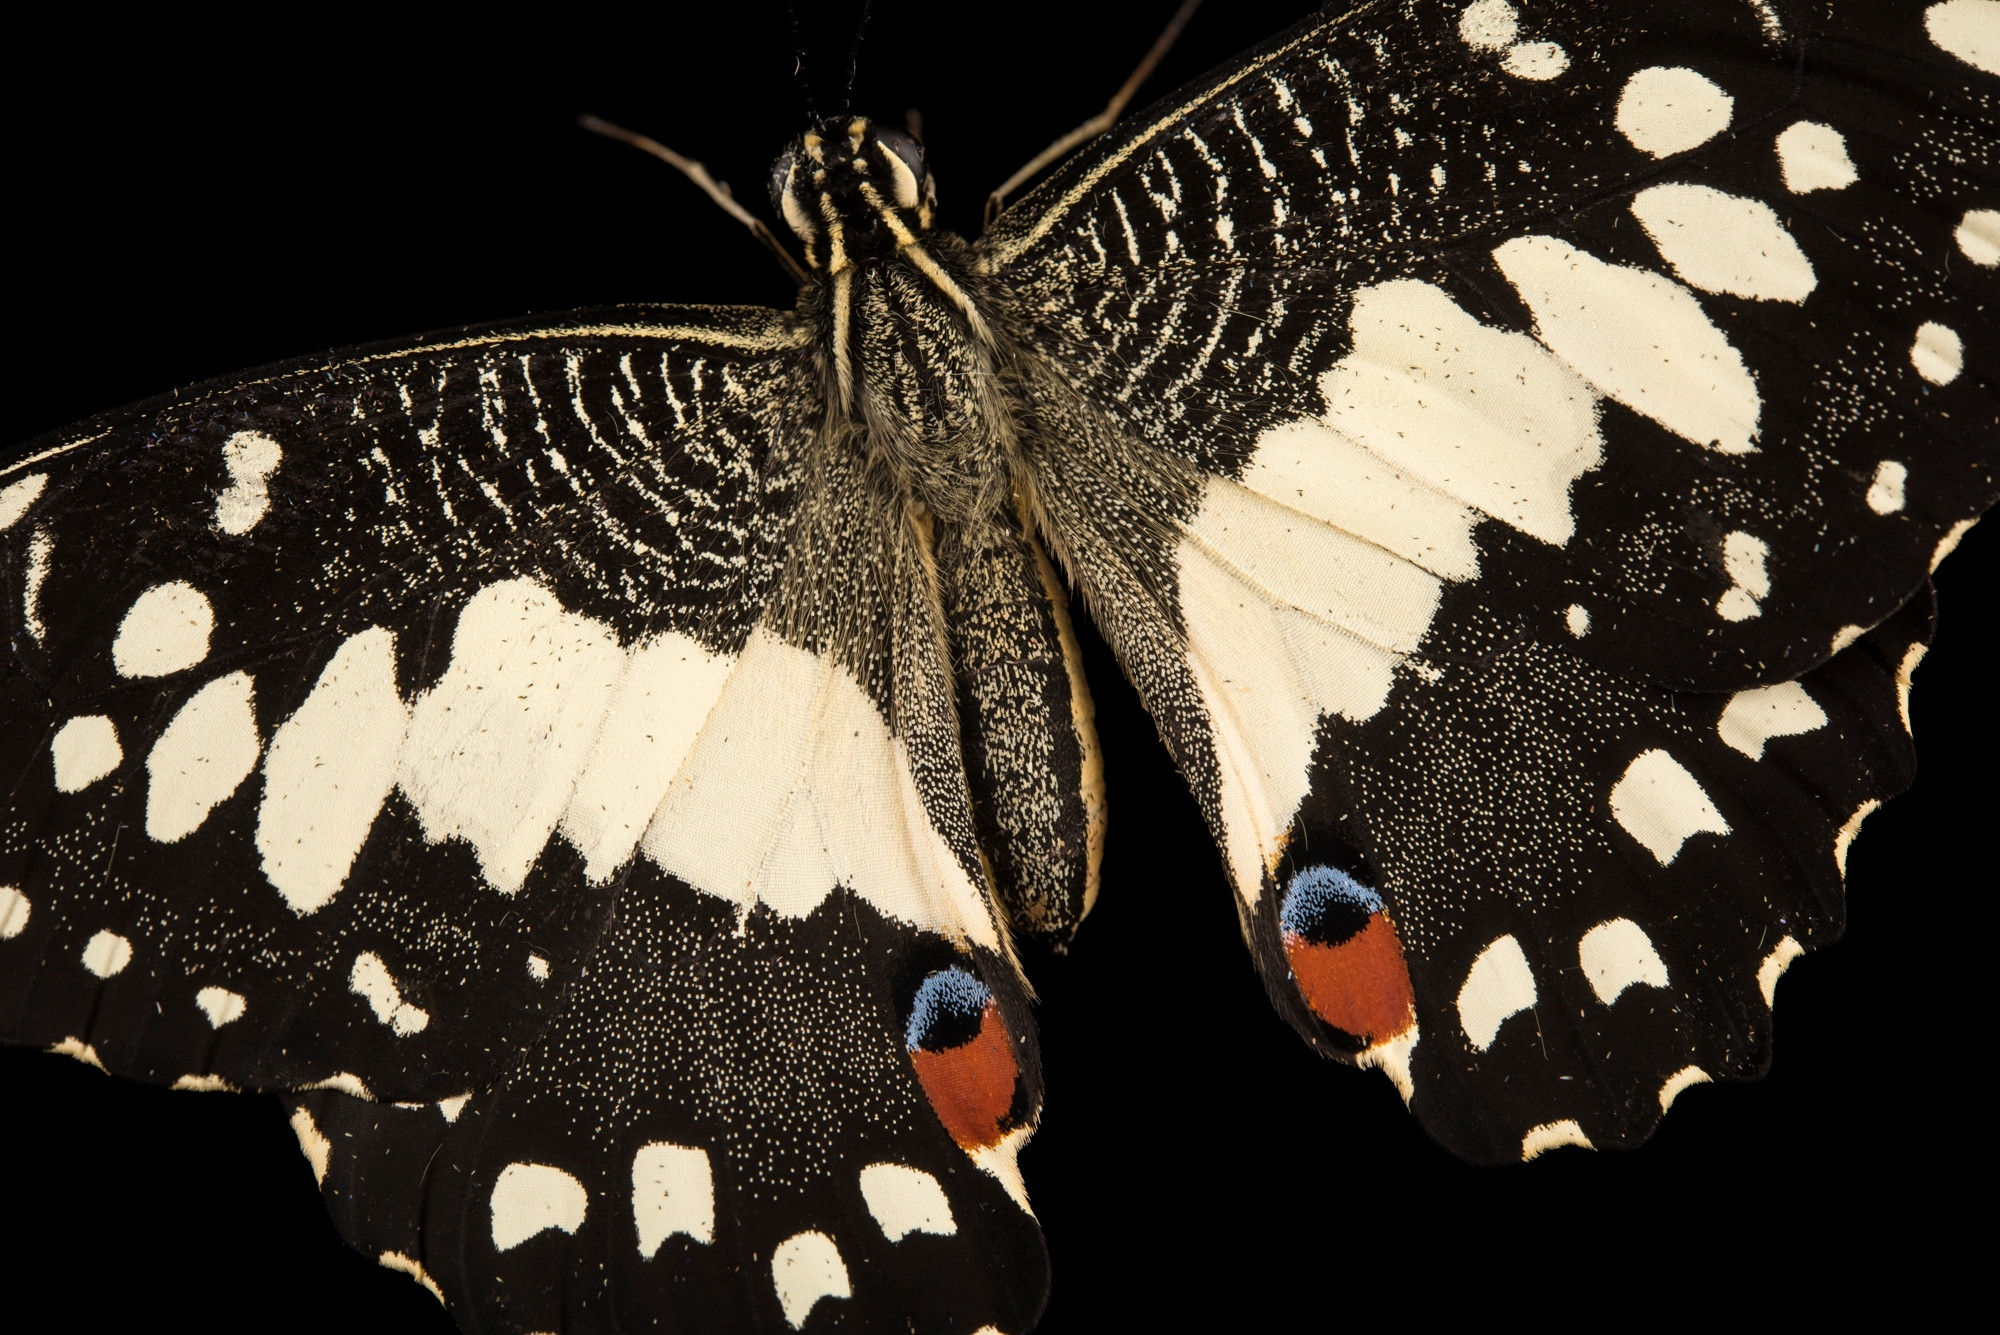 صورة مفصّلة عن كثب لفراشة الجير- بابليو ديموليوس مالايانوس، بواسطة جويل سارتور/ ناشيونال جيوغرافيك.